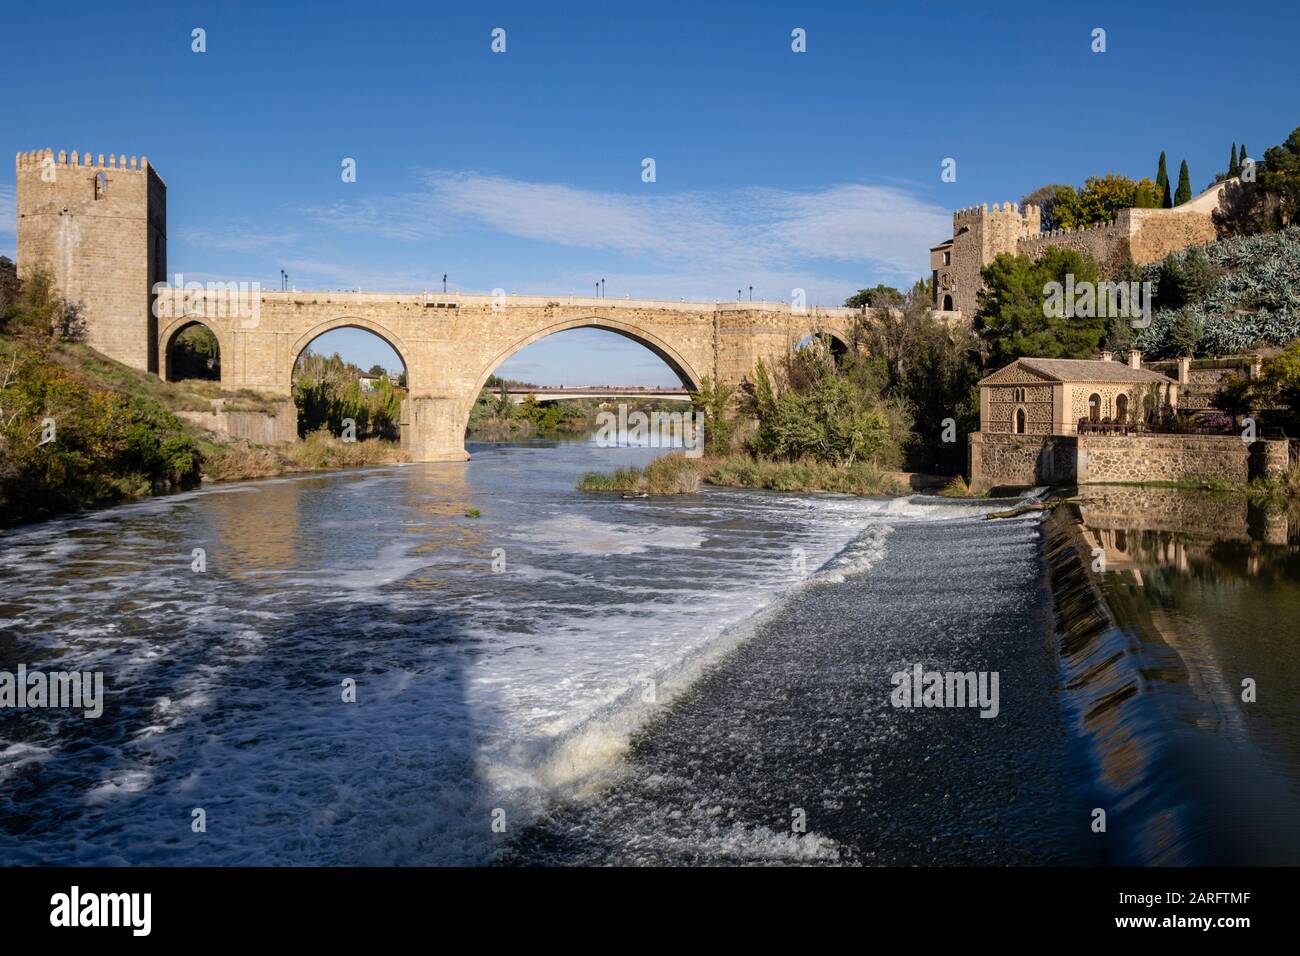 Puente de San Martín, puente Mittelaltersobre el río Tajo, Toledo, Castilla-La Mancha, Spanien. Stockfoto